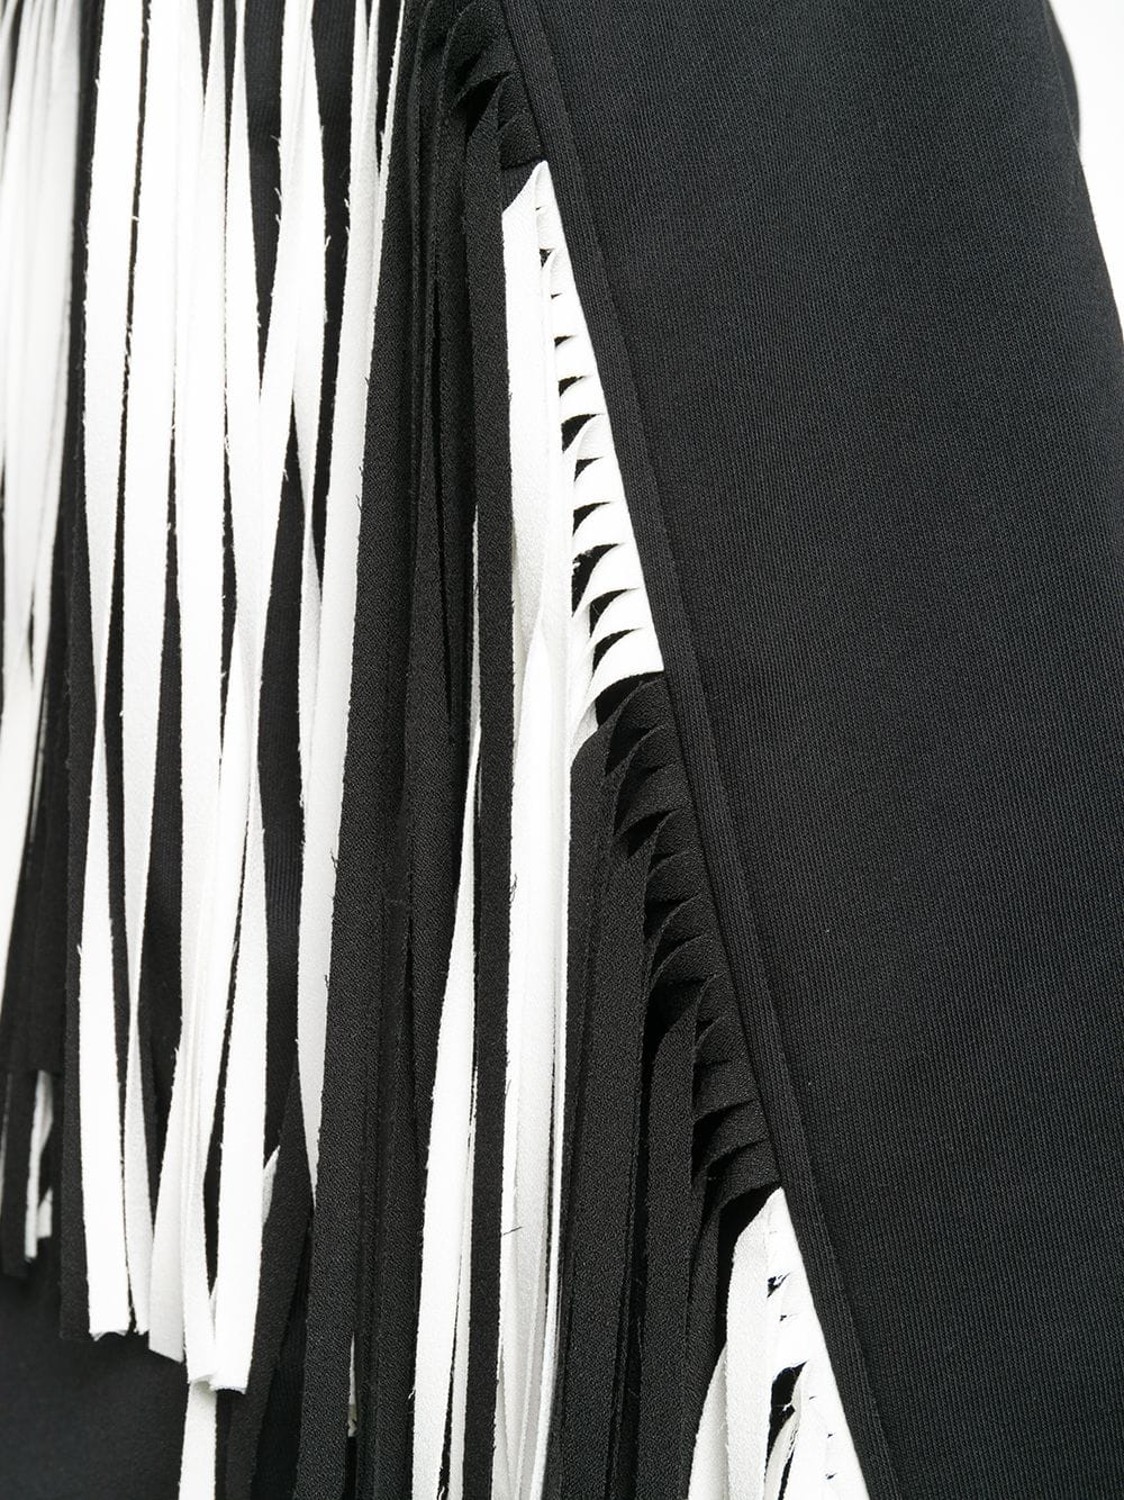 shop MSGM Sales Felpe: Felpa MSGM, modello regolare, girocollo, manica lunga, colore nero, frange dietro bianche e nere.

Composizione: 100% cotone. number 1412